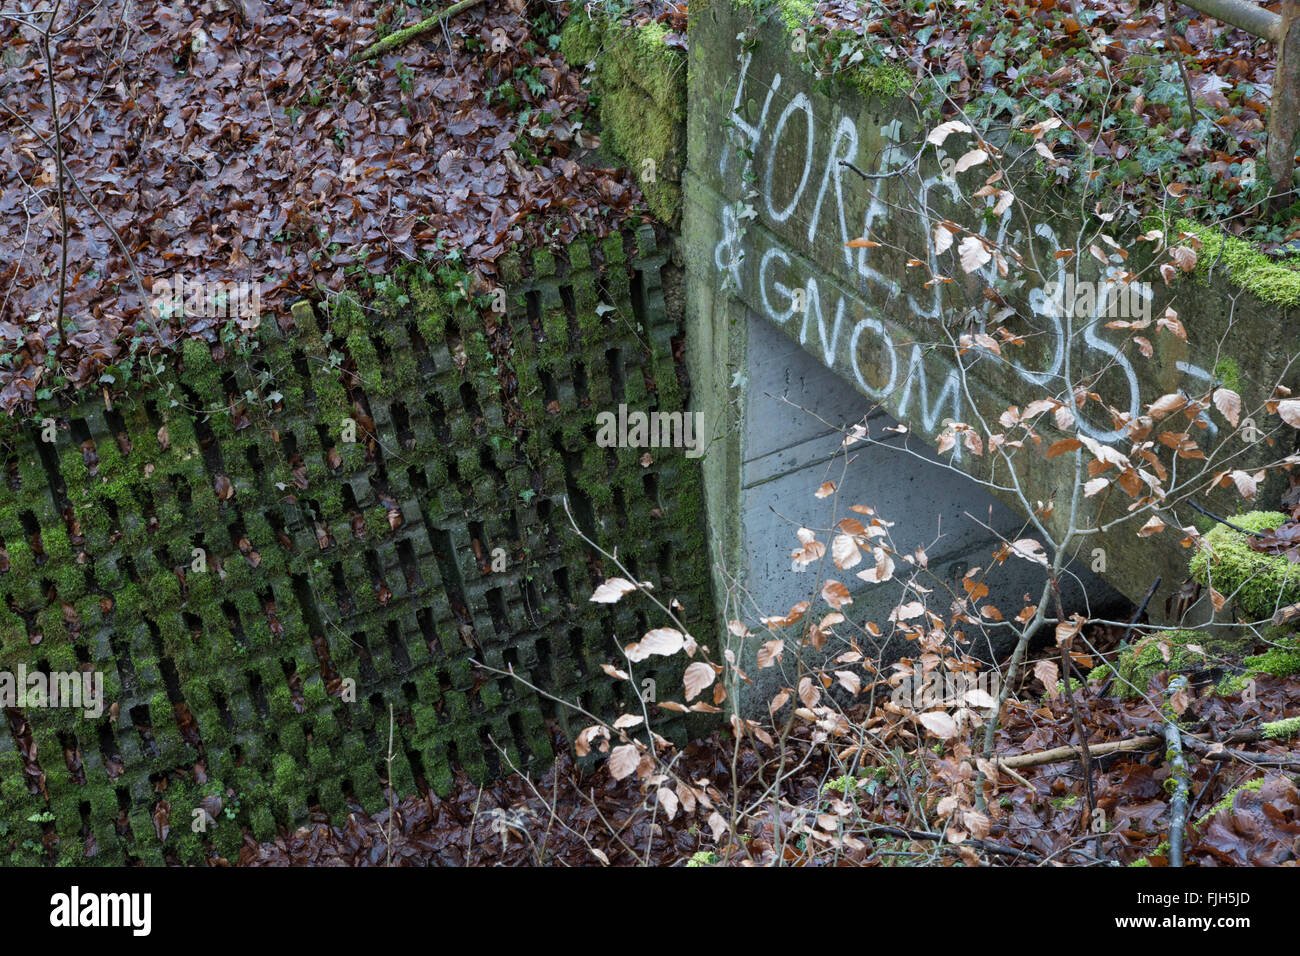 Parte de la estructura de control de inundaciones en un bosque, cubierto de musgo, despeinada, fuera de uso, construido en hormigón, con graffiti Foto de stock